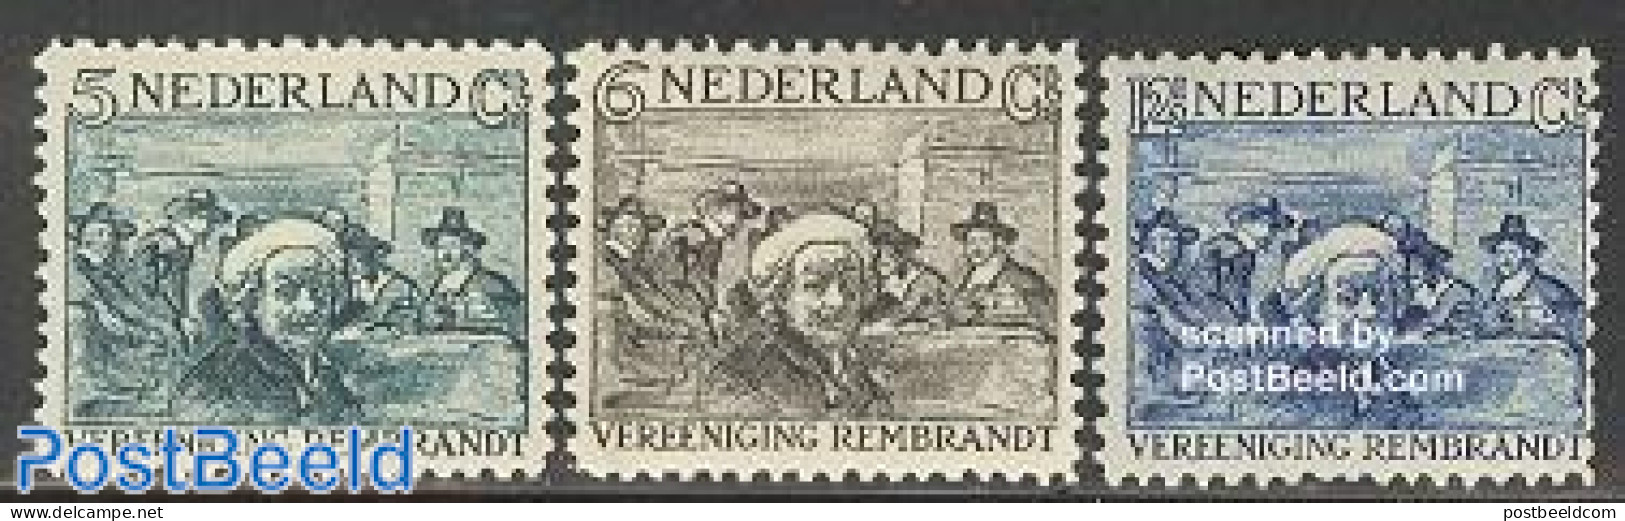 Netherlands 1930 Rembrandt 3v, Mint NH, Art - Paintings - Rembrandt - Unused Stamps